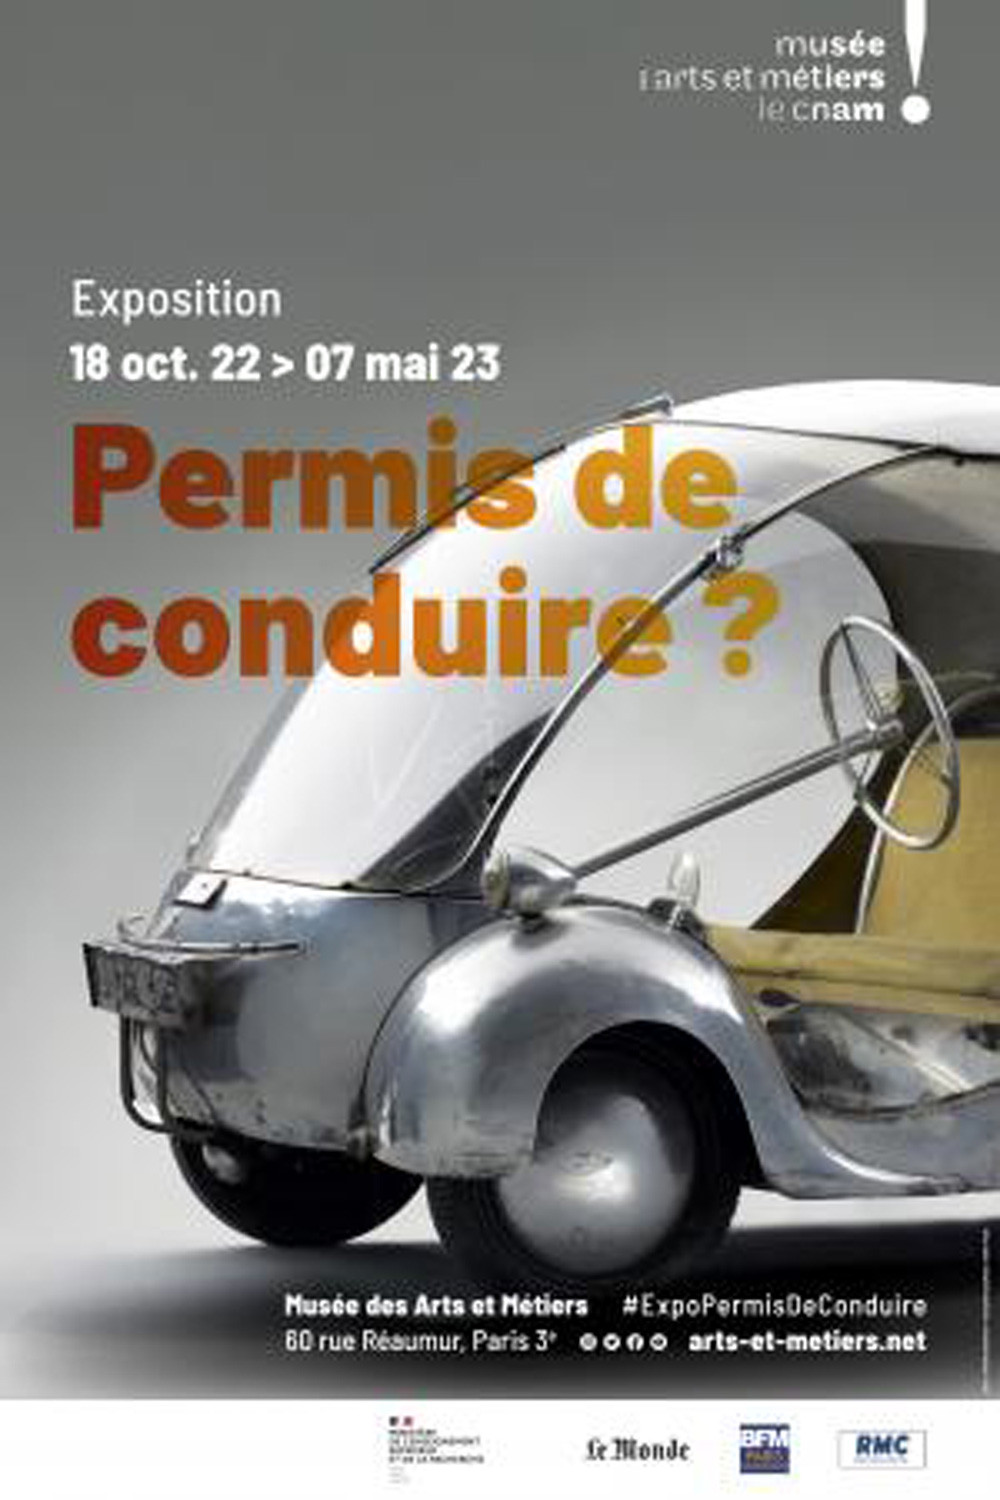 Permis de conduire ? une exposition consacrée au devenir de l'automobile au musée des Arts et Métiers